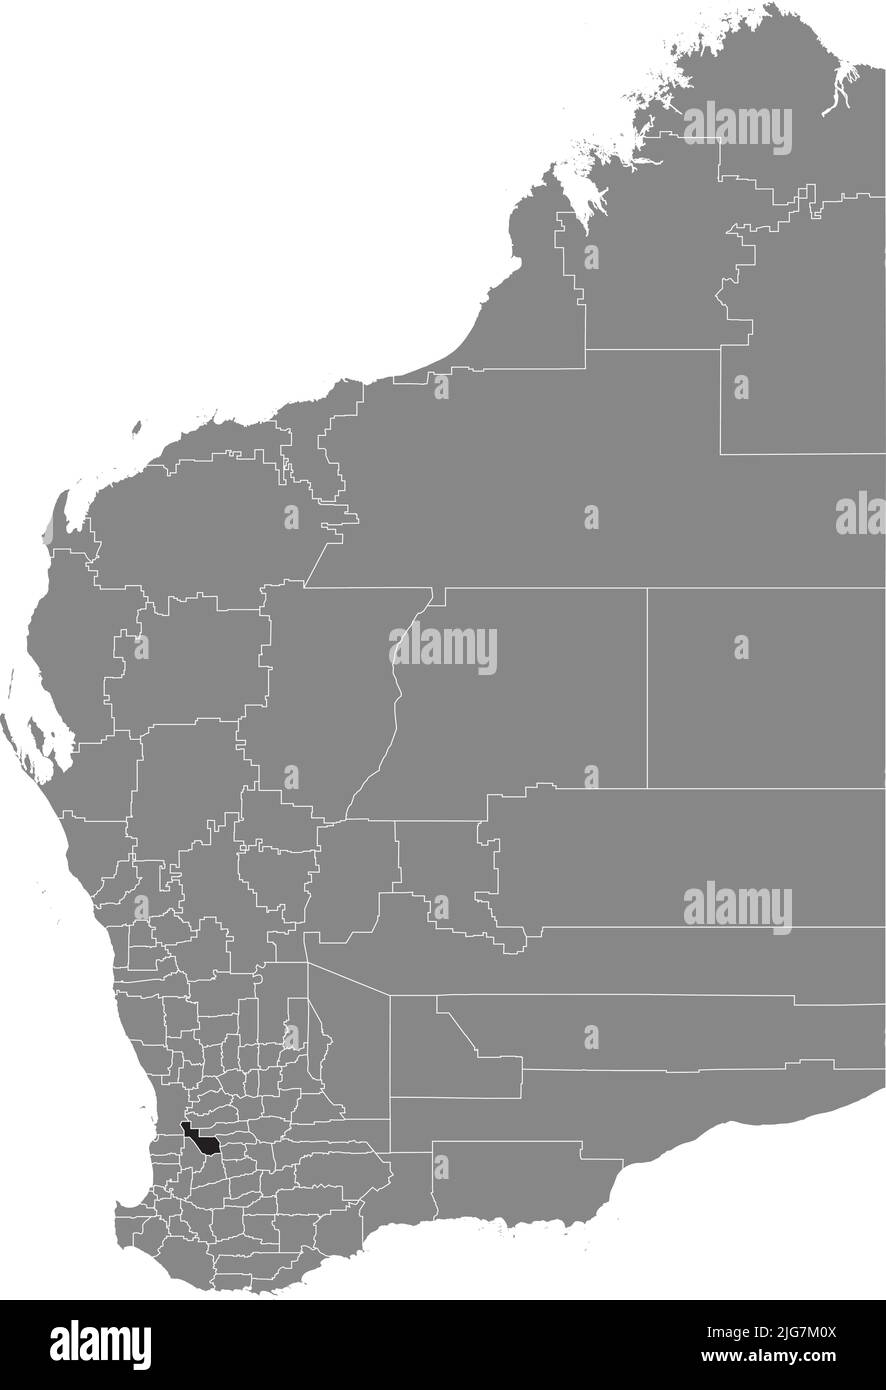 Carte de localisation du SHIRE OF WANDERING, Australie occidentale Illustration de Vecteur